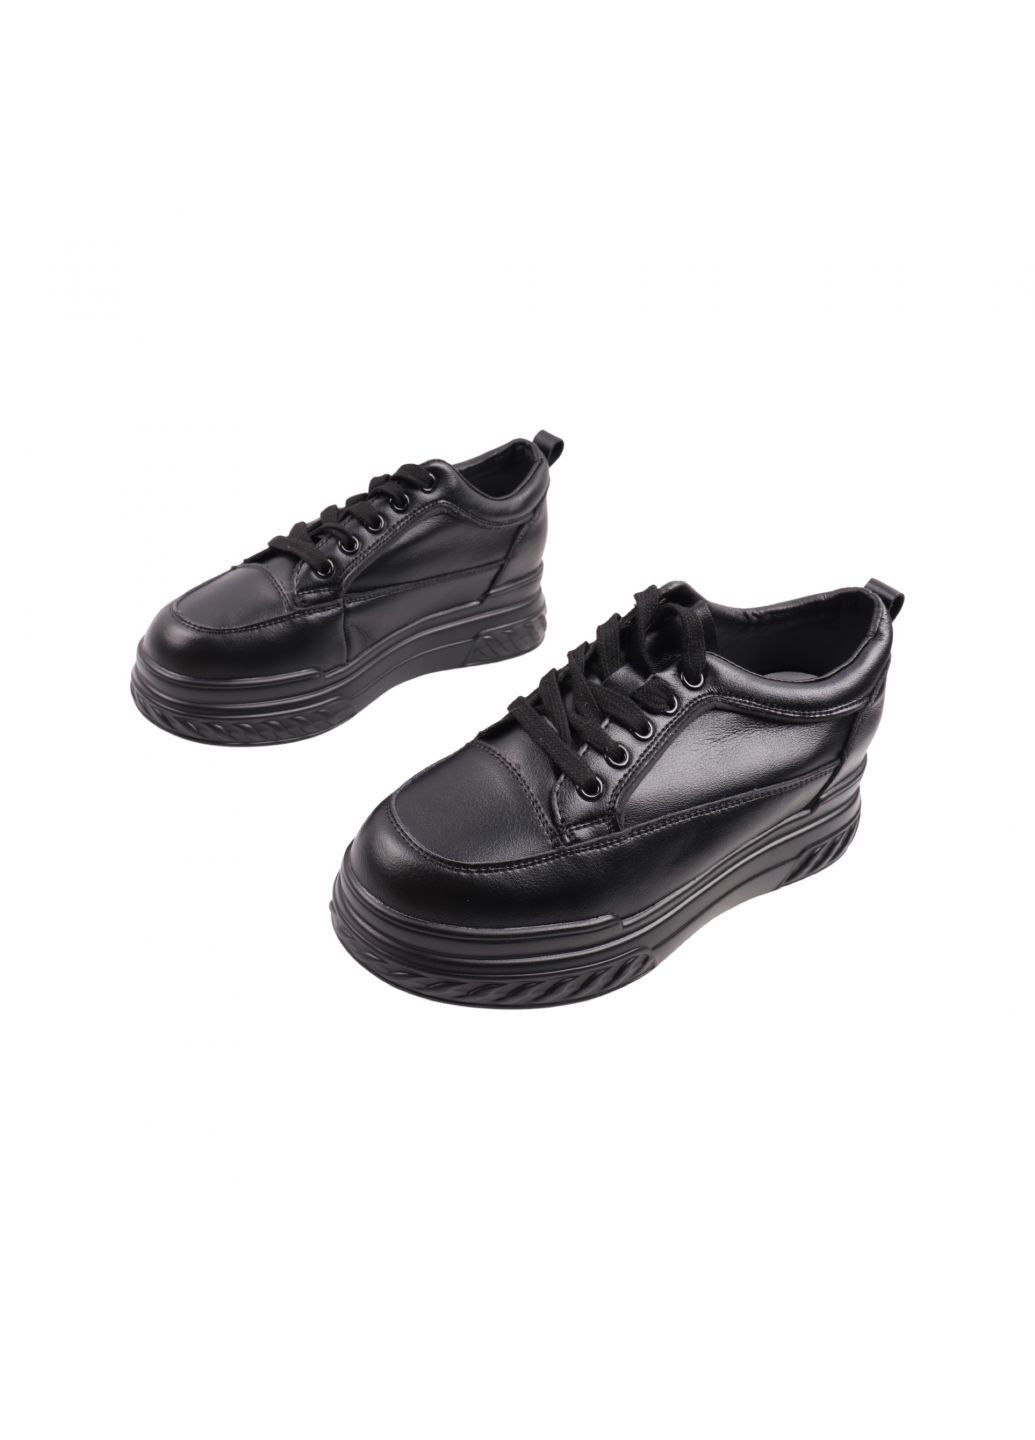 Черные кроссовки женские черные натуральная кожа Renzoni 877-23DTC